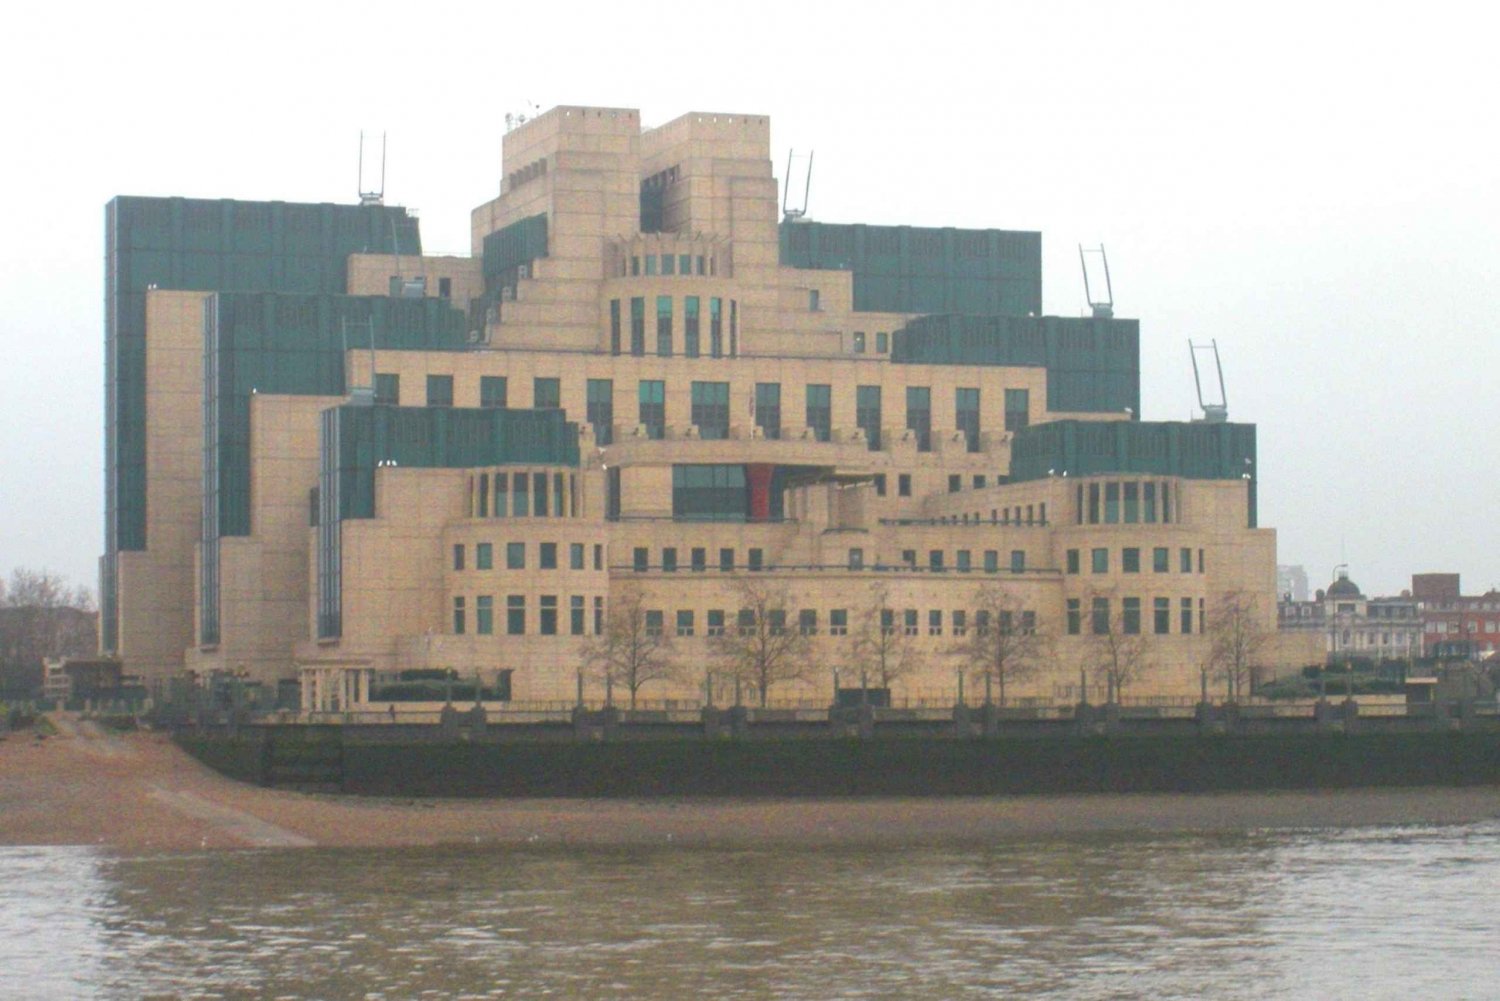 Lontoo: James Bondin kuvauspaikkojen kiertoajelu mustalla taksilla.